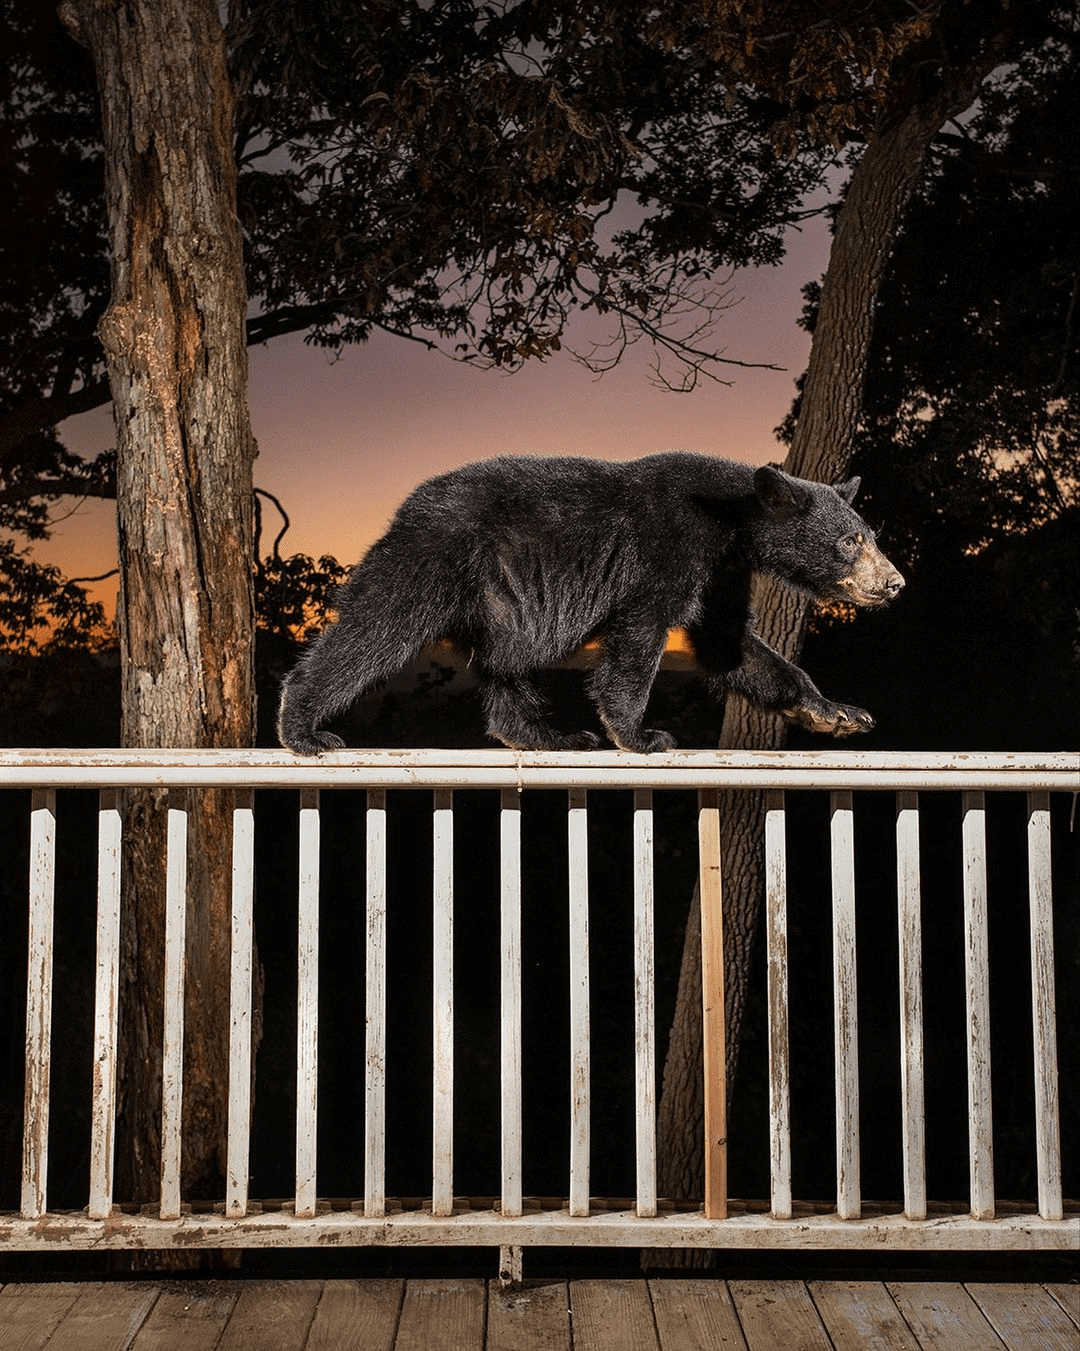 Проект фотографа из США о диких животных, живущих рядом с людьми